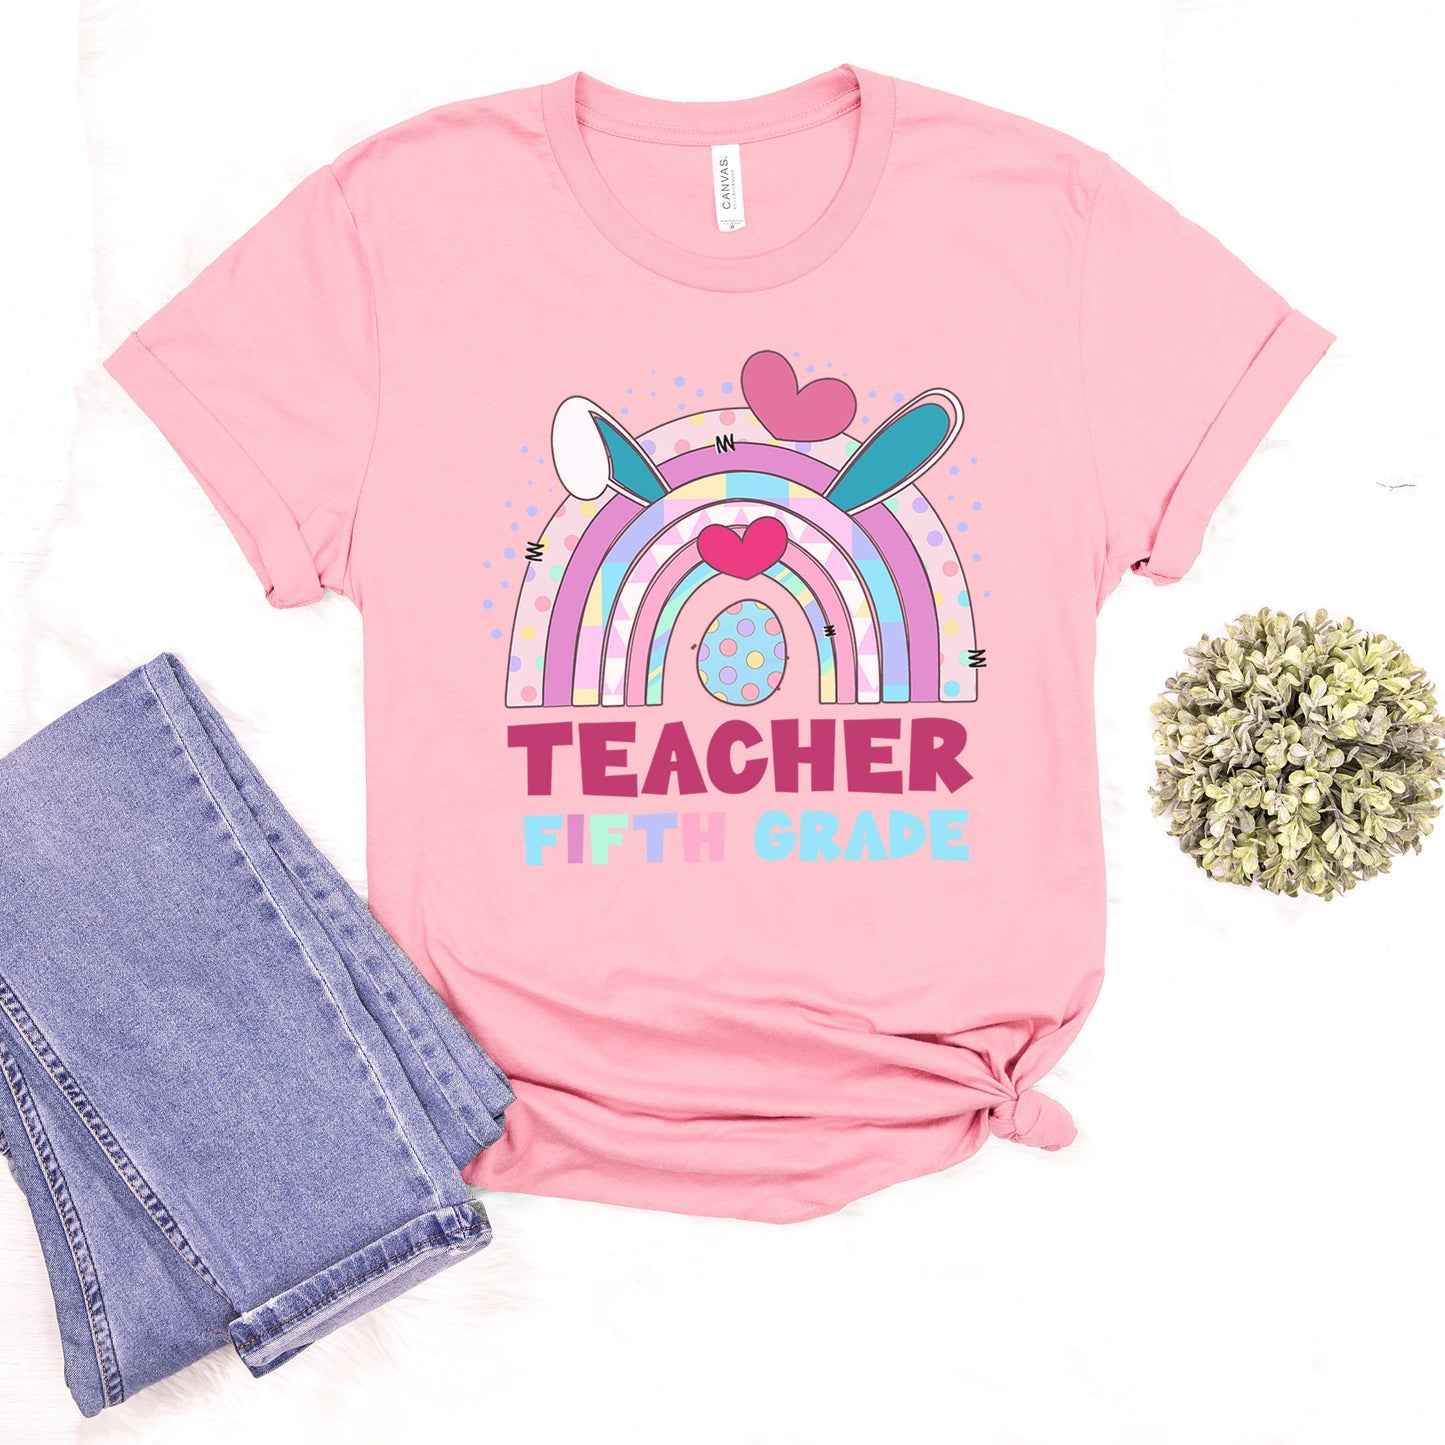 Teacher 5th Grade Easter Shirt, Fifth Grade Easter Shirt, Teacher Fifth Grade Elementary School Easter Tee, Happy Easter School Teacher Tee